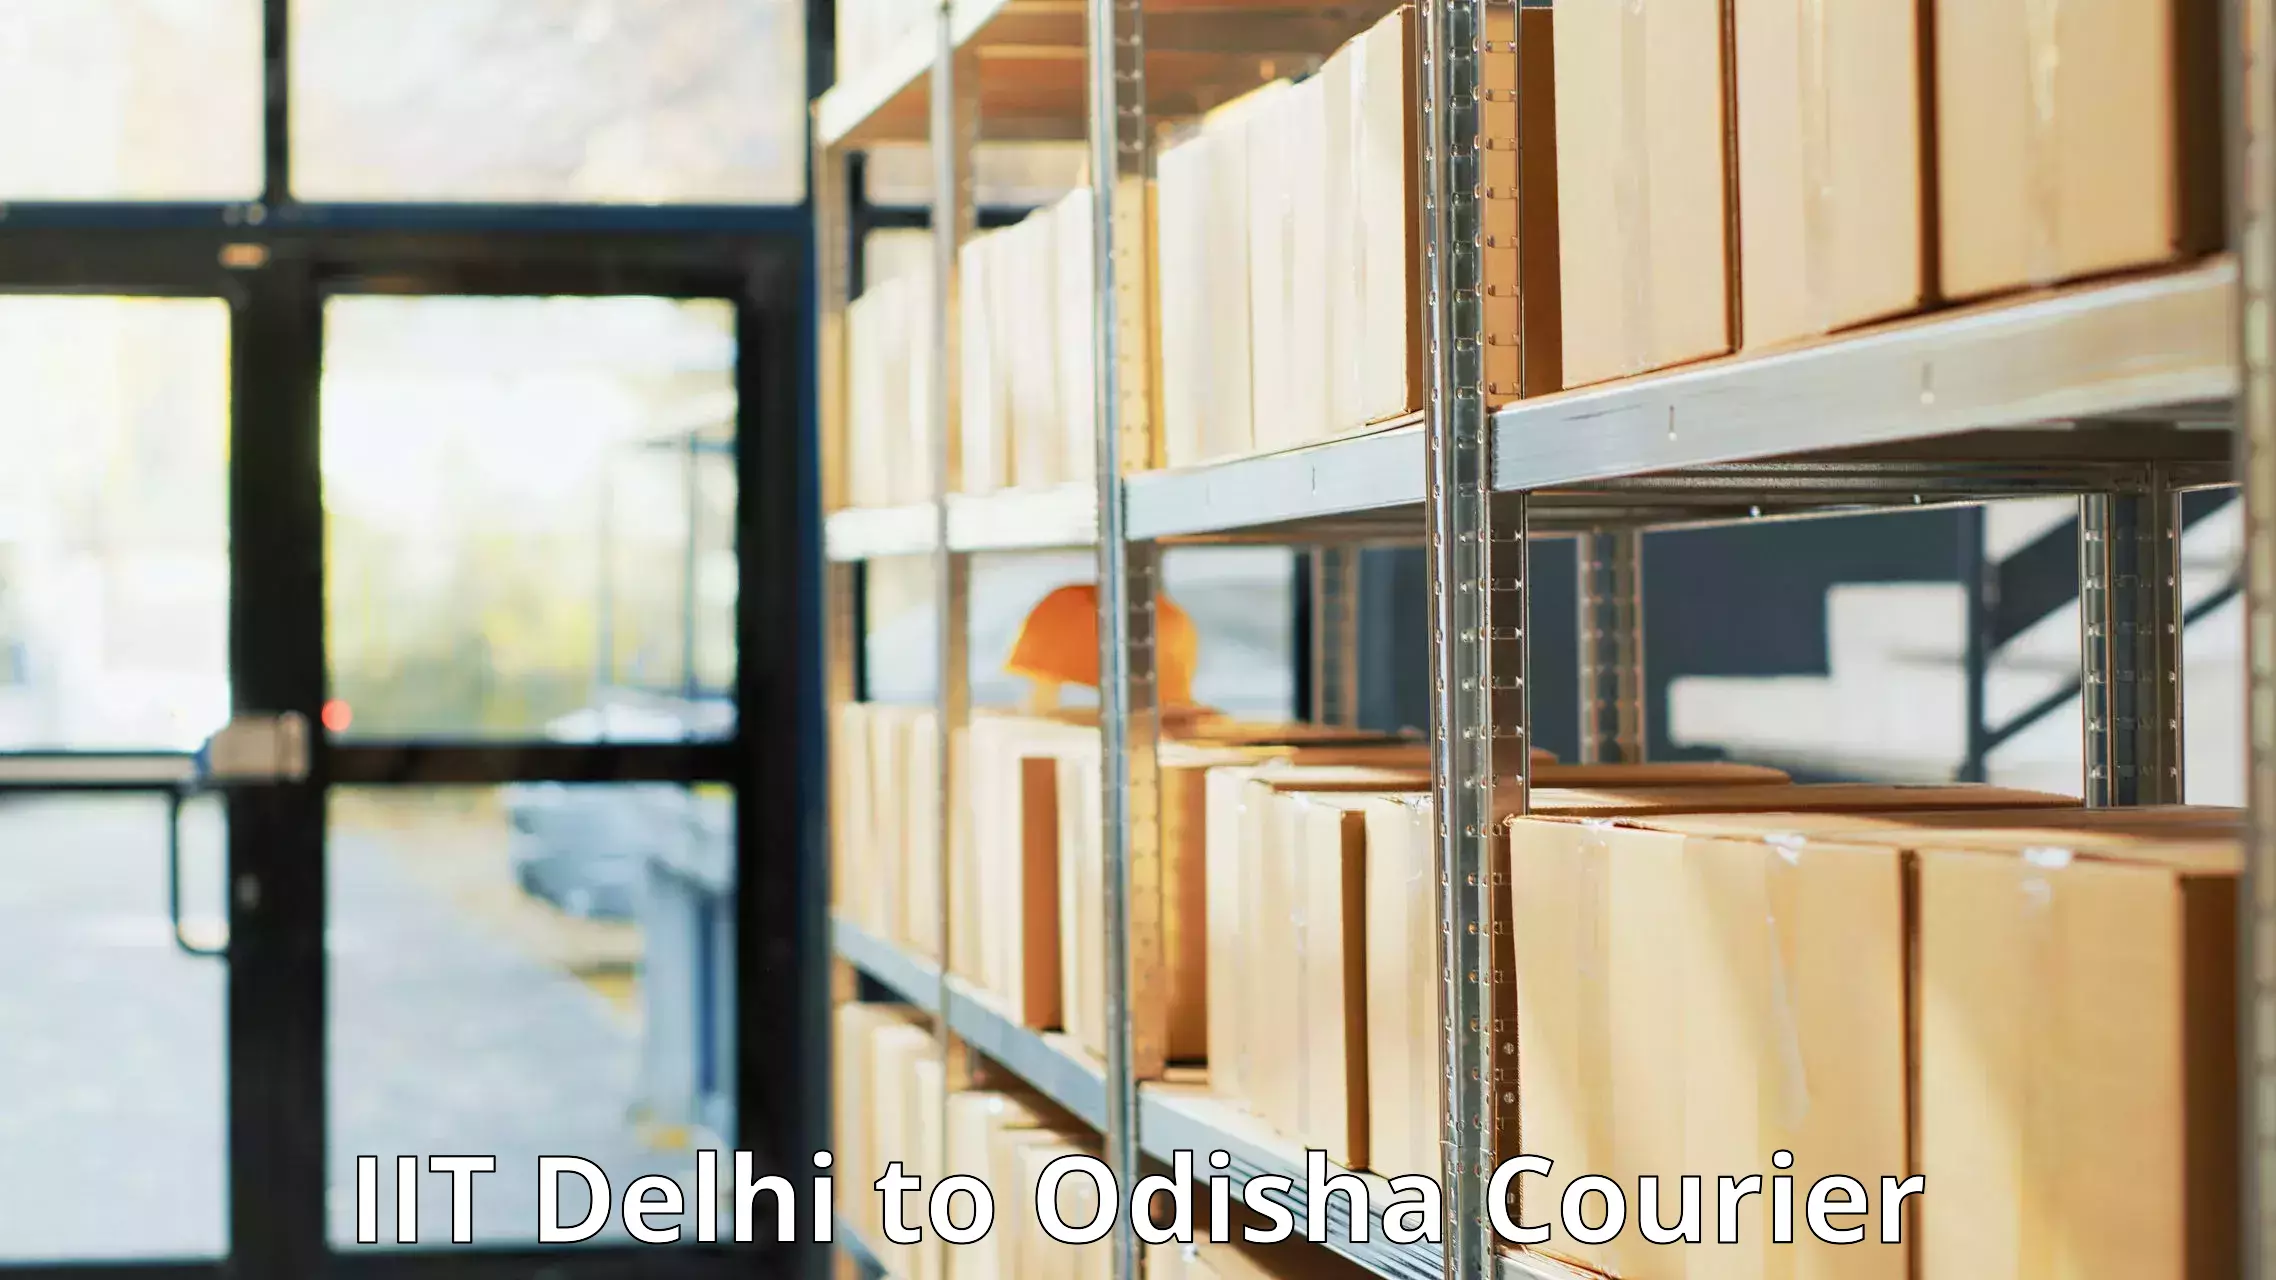 Courier services in IIT Delhi to Jeypore